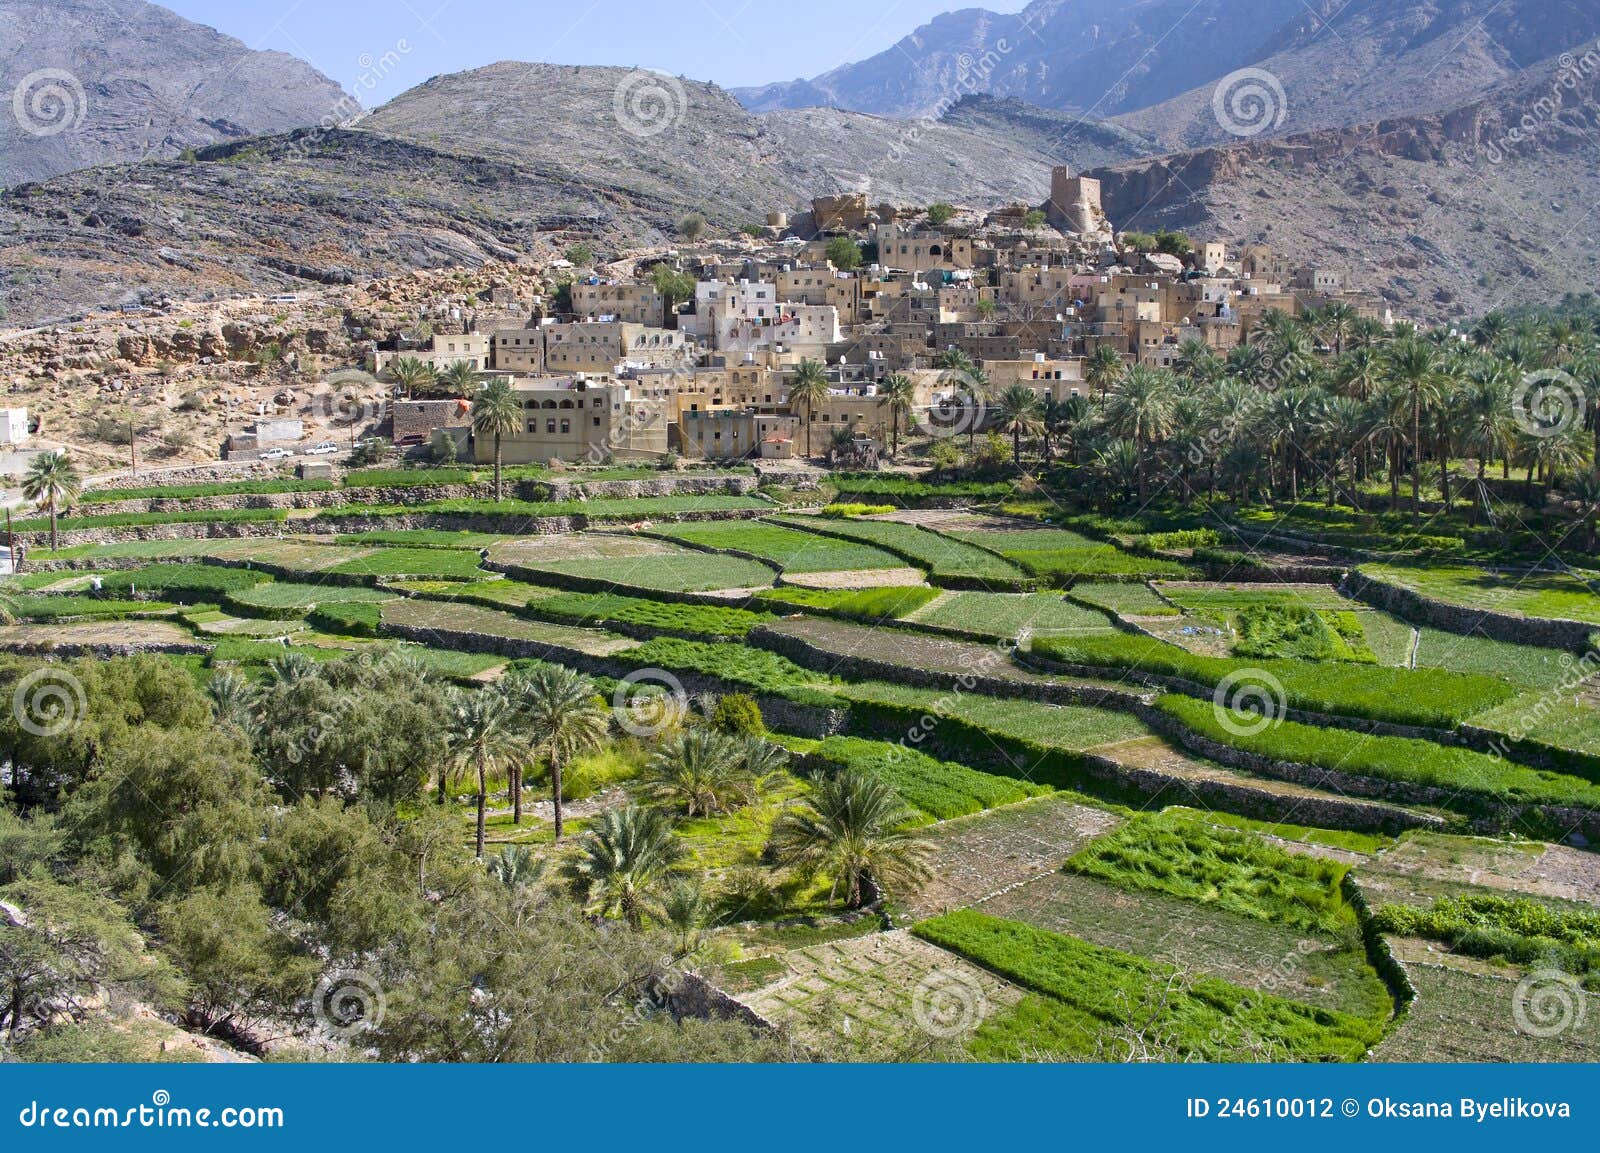 Le village Bilad Sayt, Oman. Le village Bilad Sayt, sultanat Oman